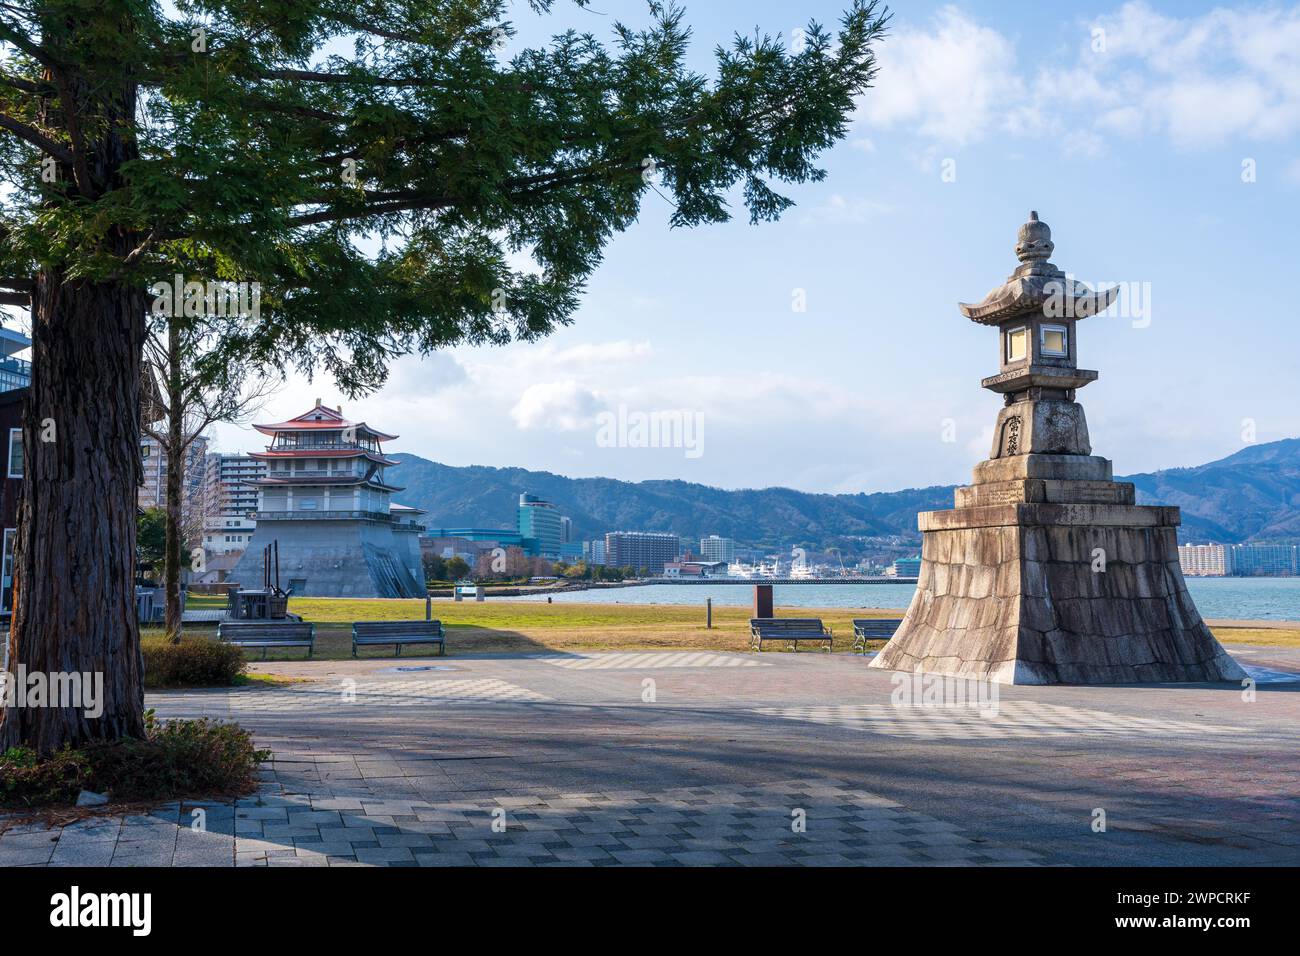 Monumento alla luce notturna di Ishiba tsu, sulla riva del lago Biwa. Otsu, Prefettura di Shiga, Giappone. Traduzione giapponese "luce notturna". Foto Stock